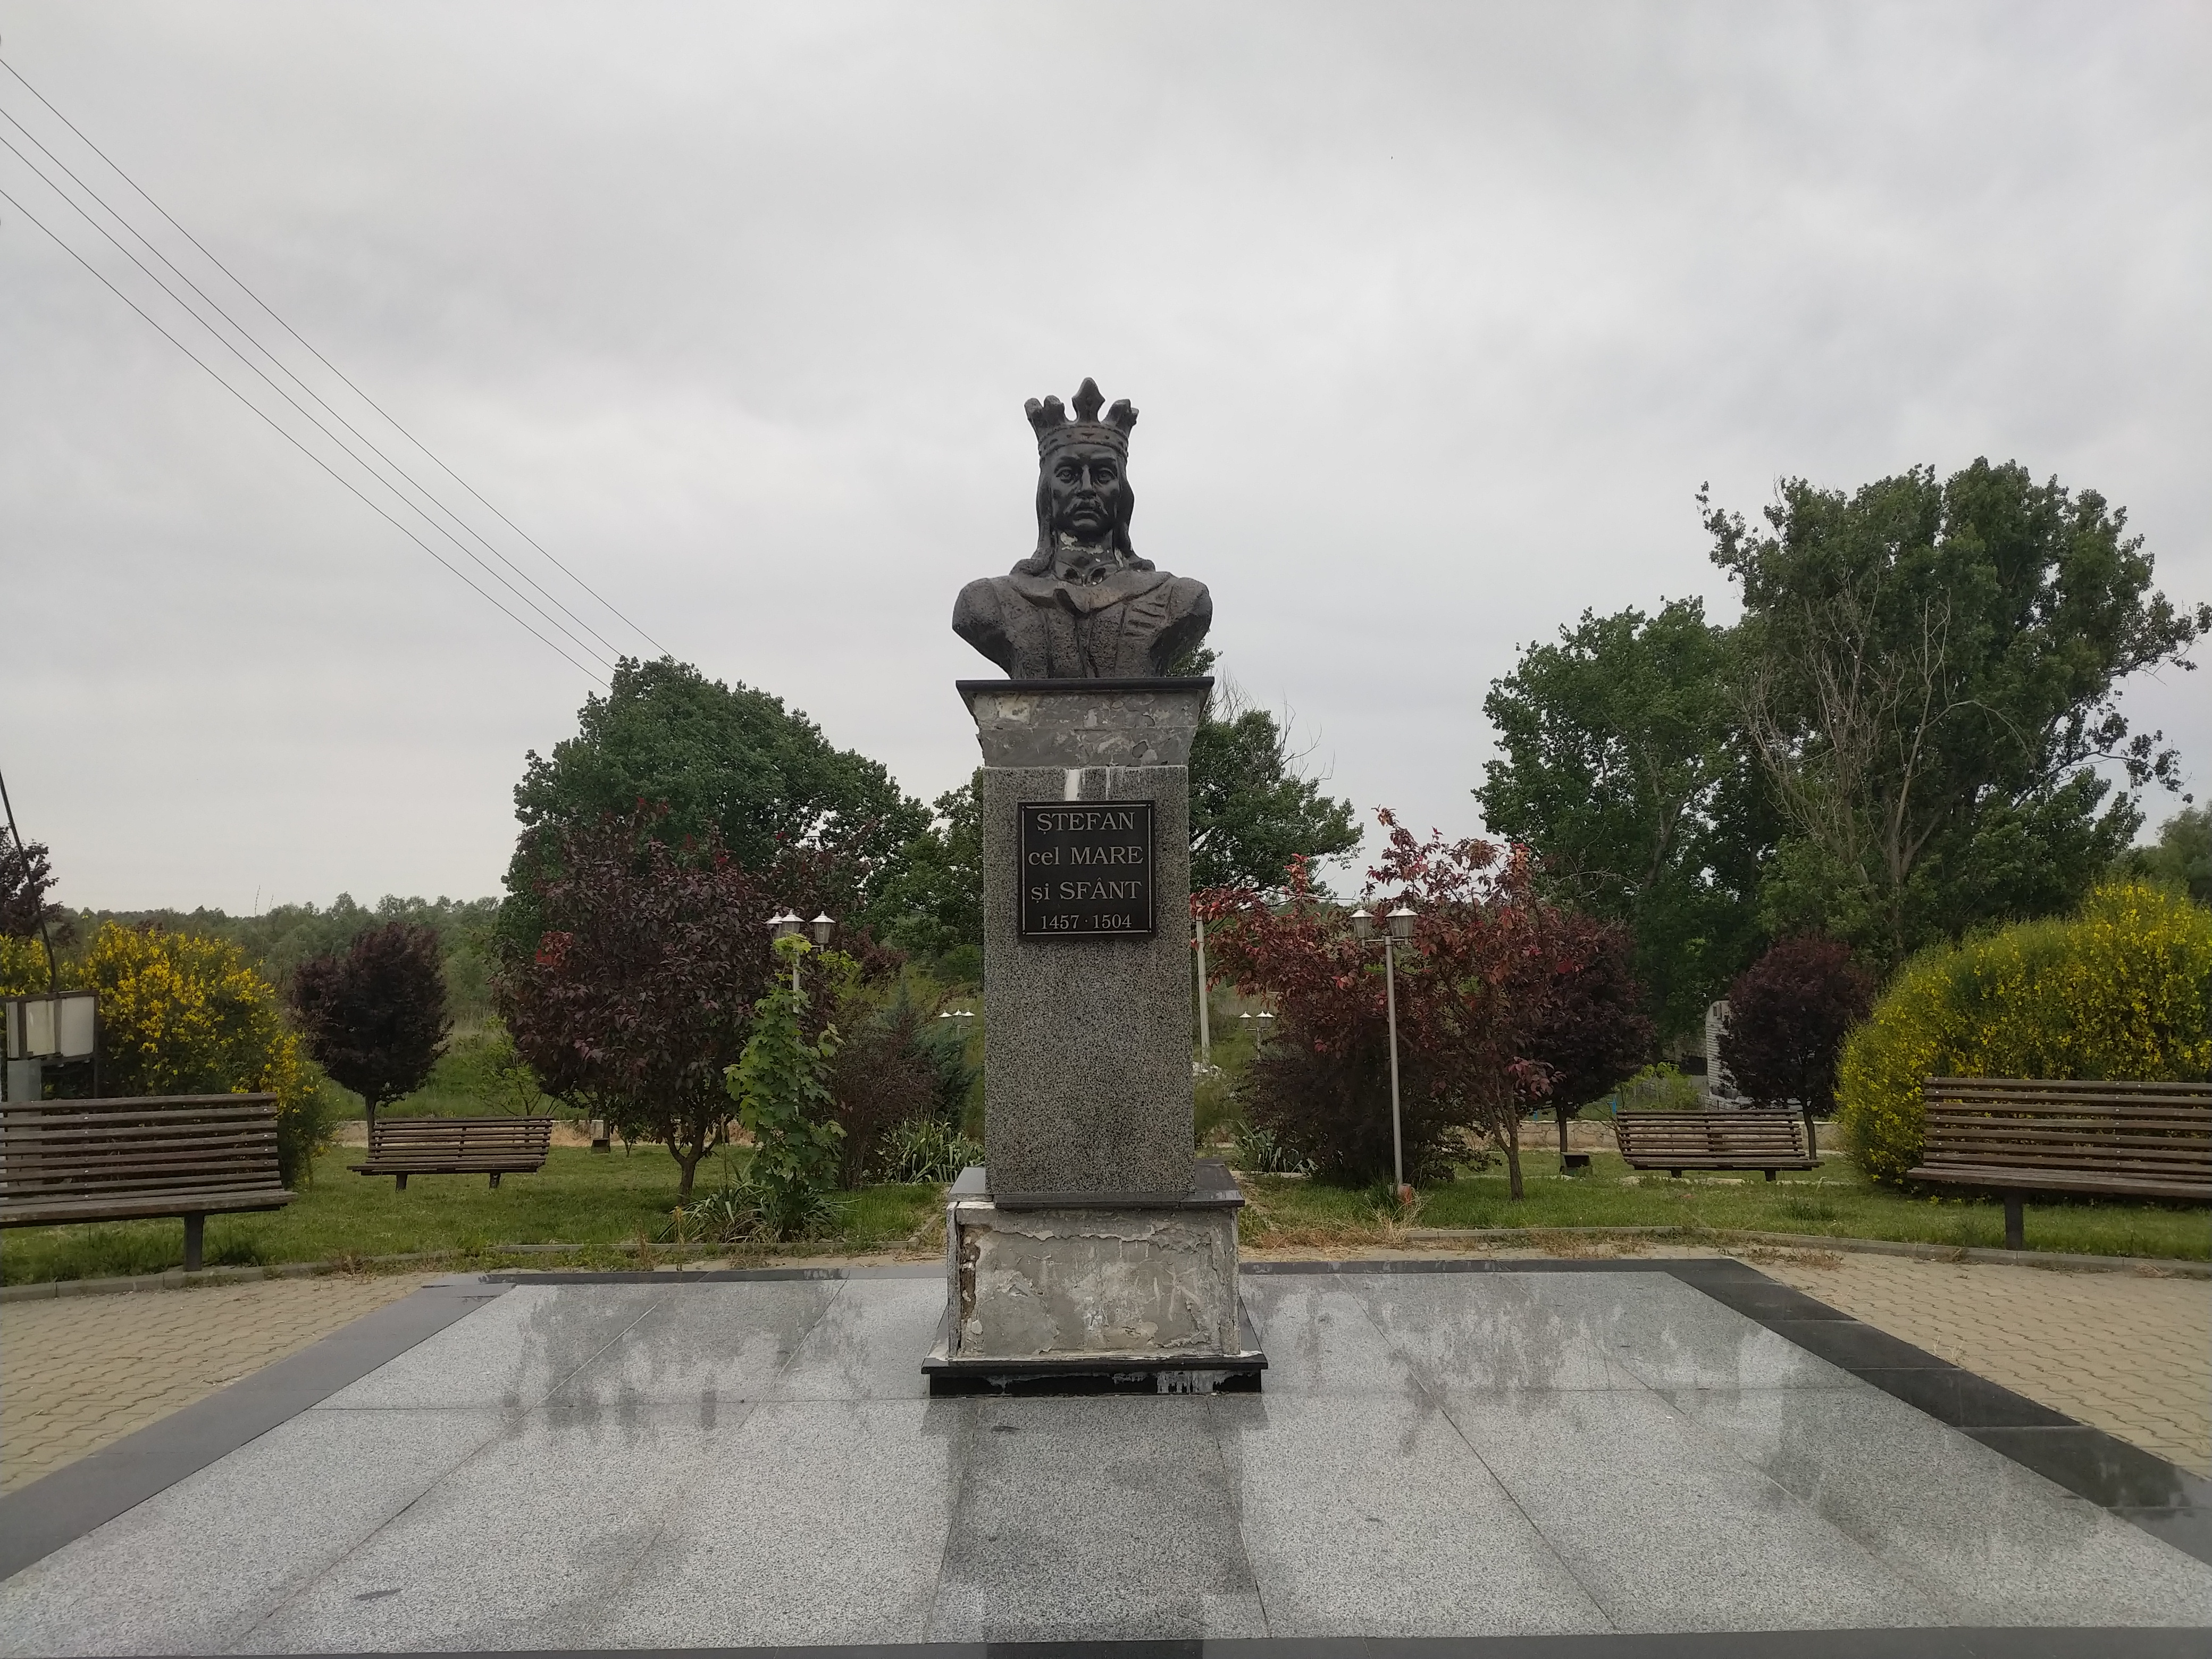 MD, Район Cahul, Satul Colibasi, Monument lui Stefan cel Mare